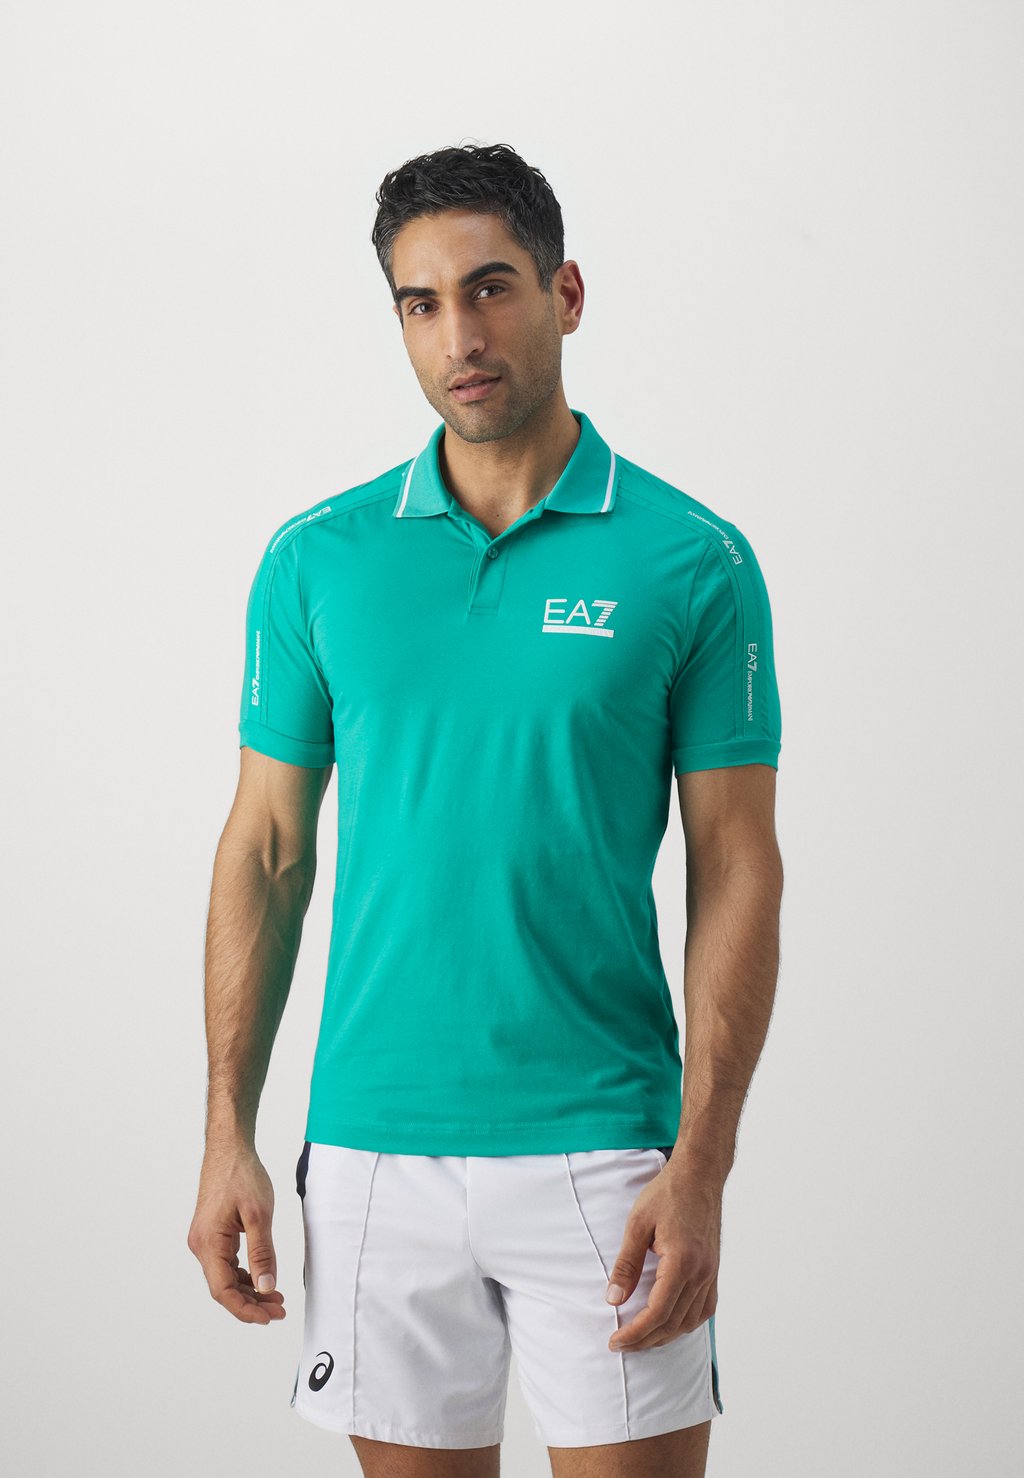 Рубашка-поло CLUB EA7 Emporio Armani, цвет spectra green